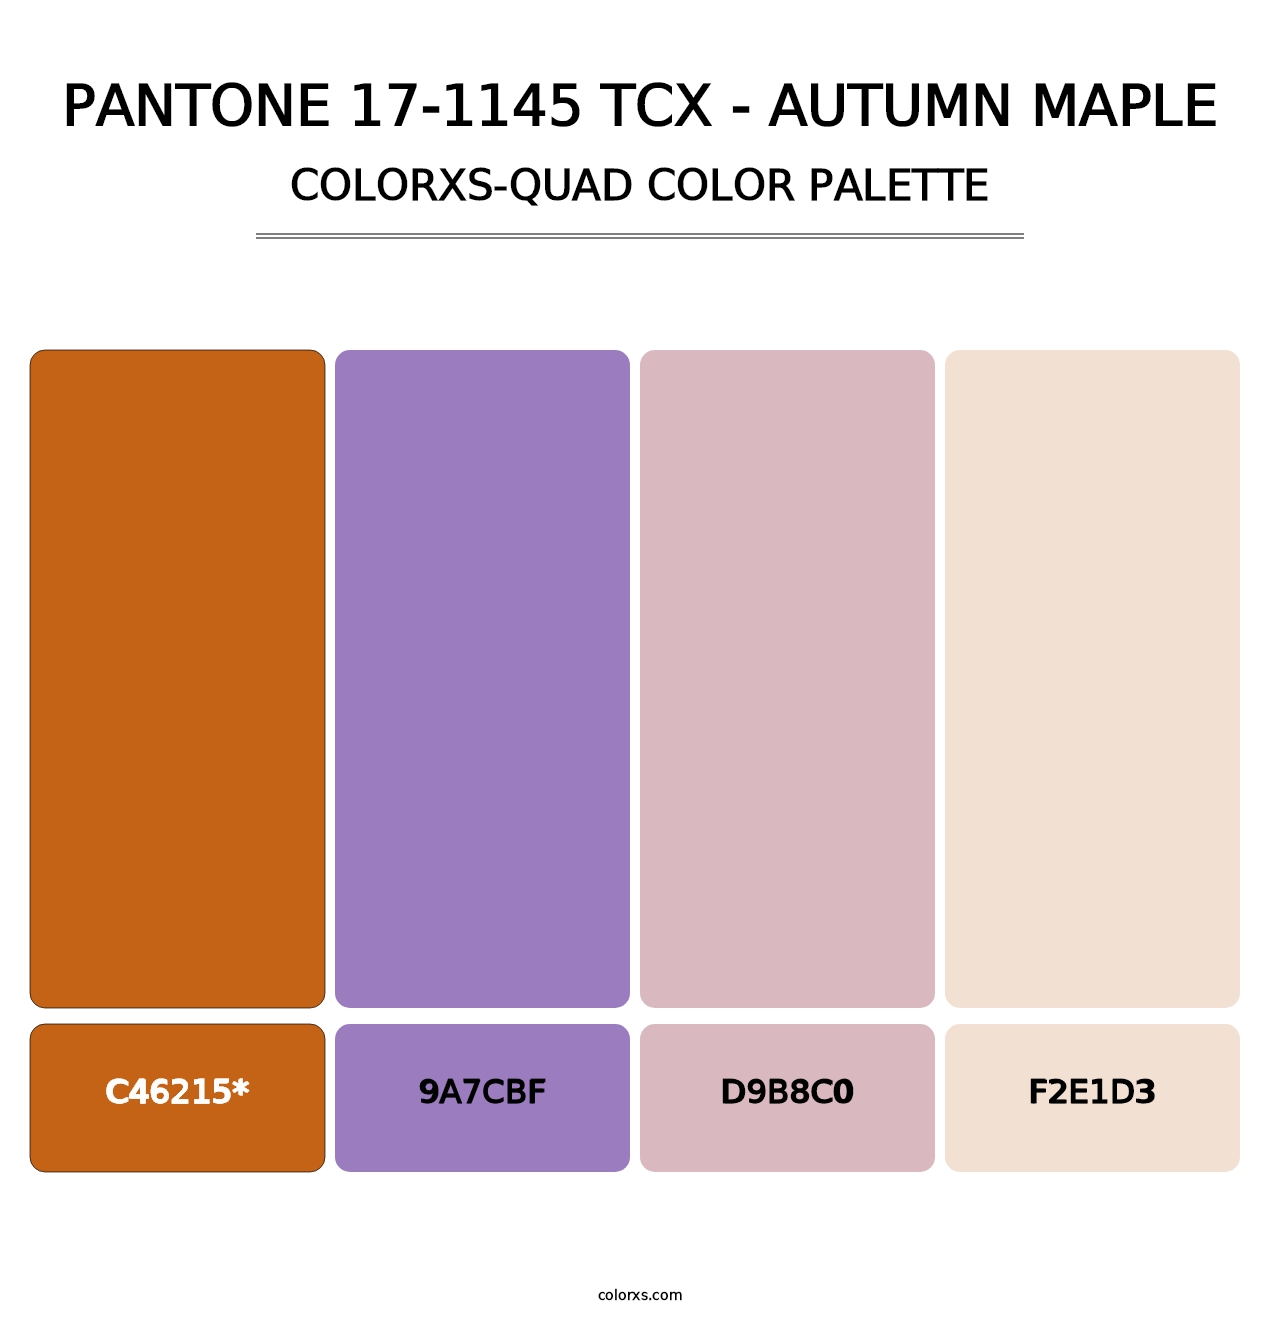 PANTONE 17-1145 TCX - Autumn Maple - Colorxs Quad Palette